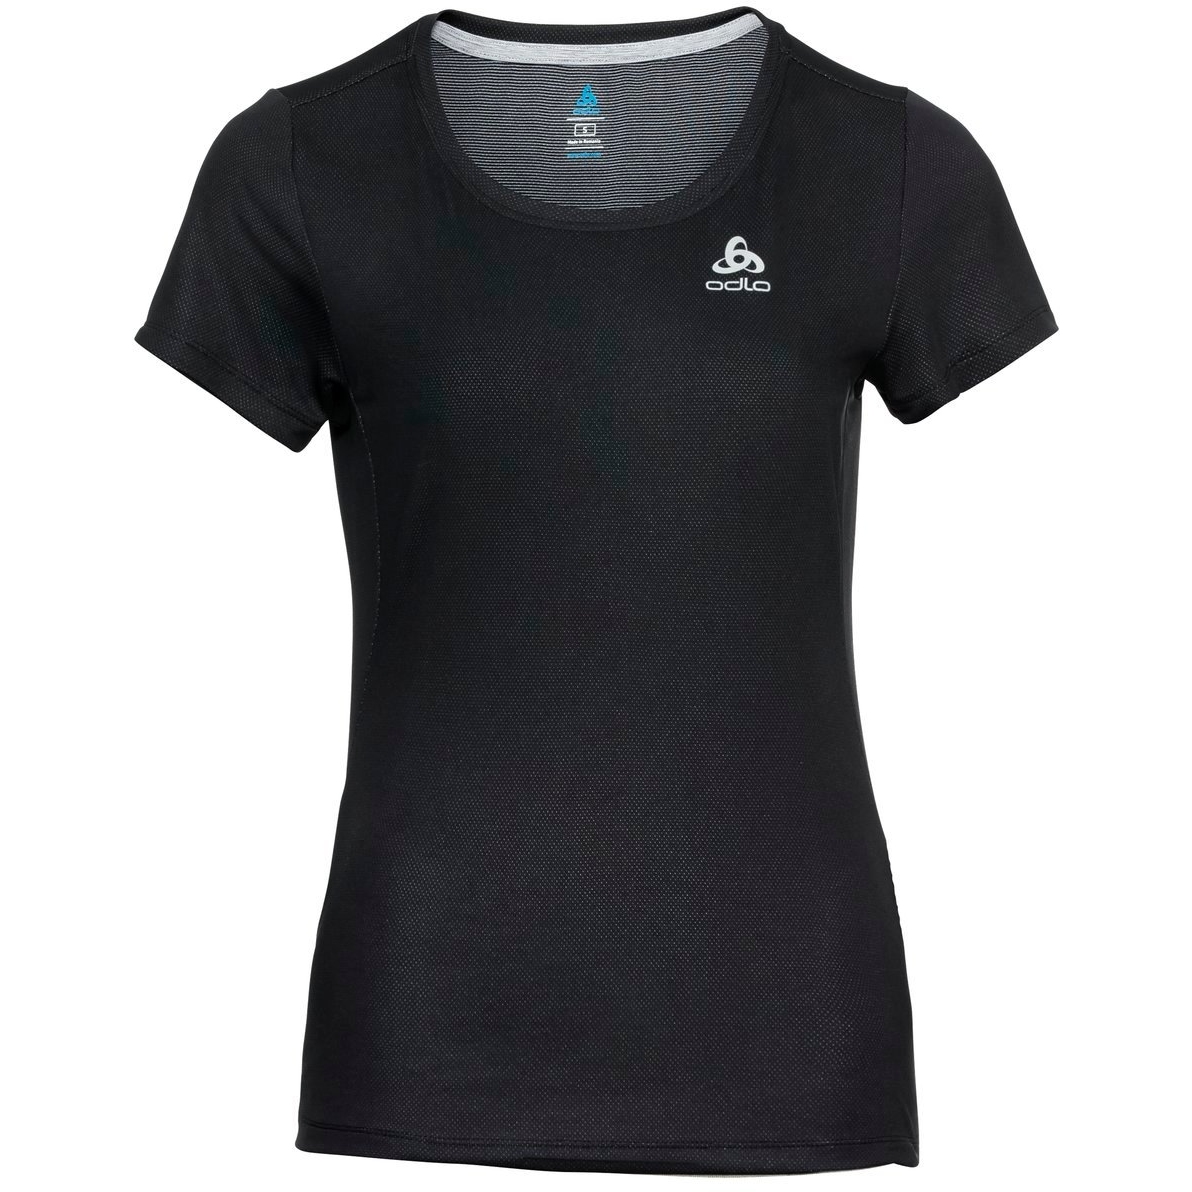 Produktbild von Odlo Damen F-Dry T-Shirt - schwarz